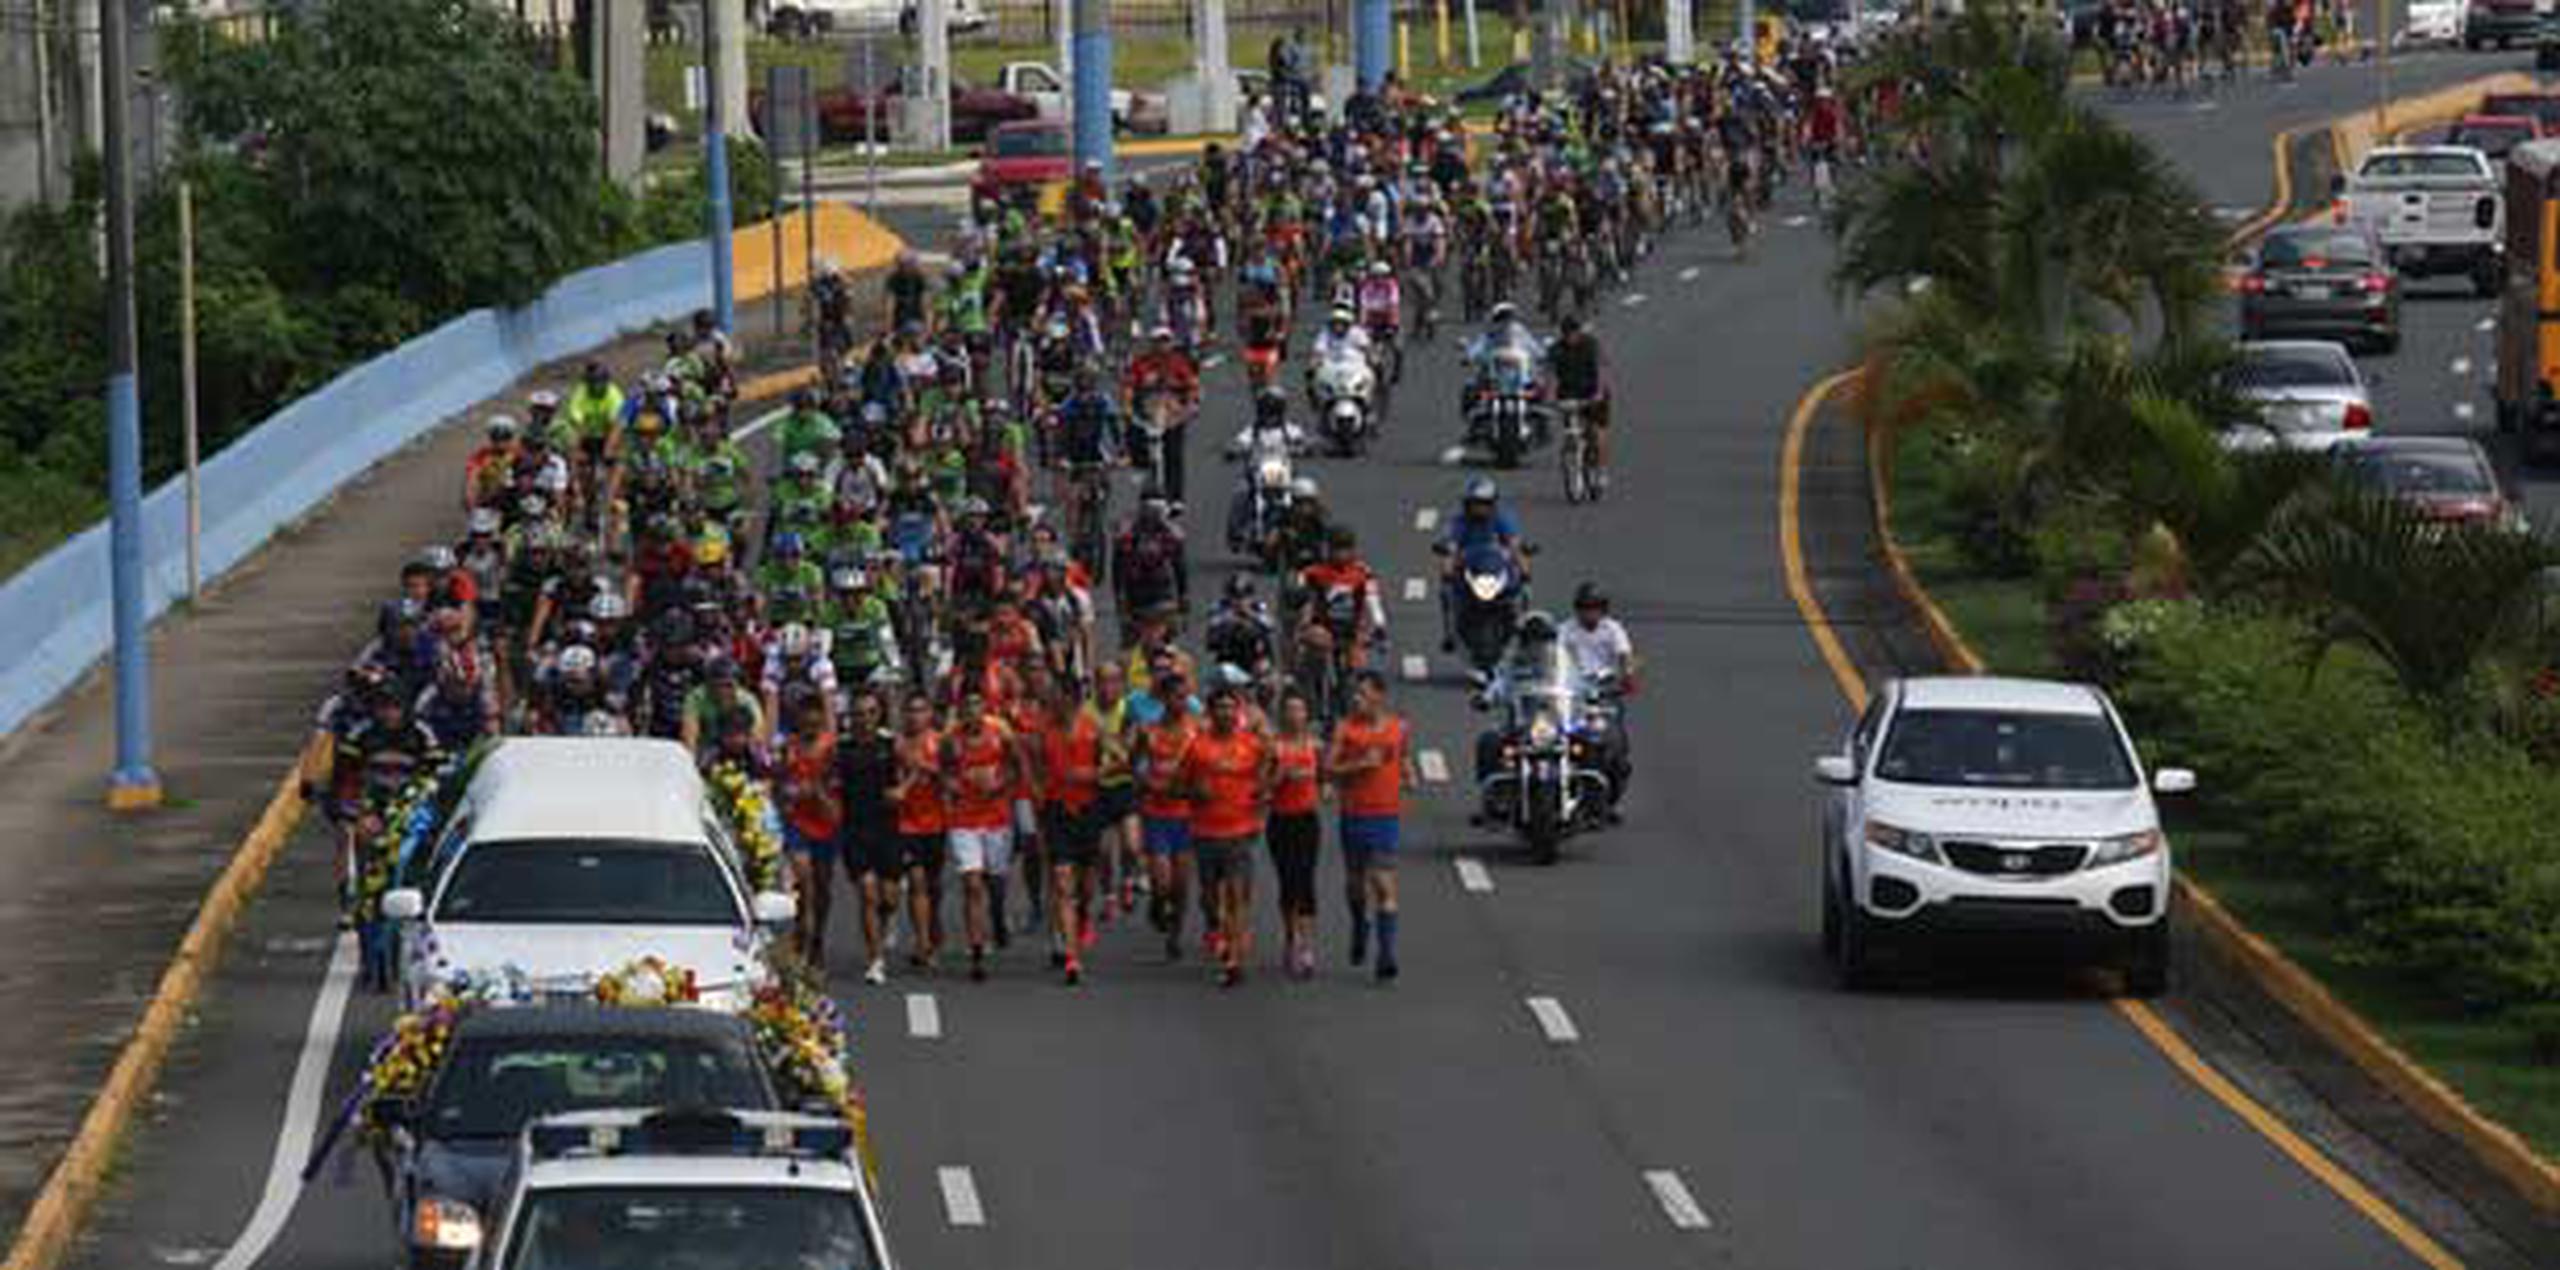 Los ciclistas se unieron en fila, desmontaron las gomas delanteras de sus bicicletas y las elevaron para rendirle honor. (GFR Media / Nelson Reyes Faría)